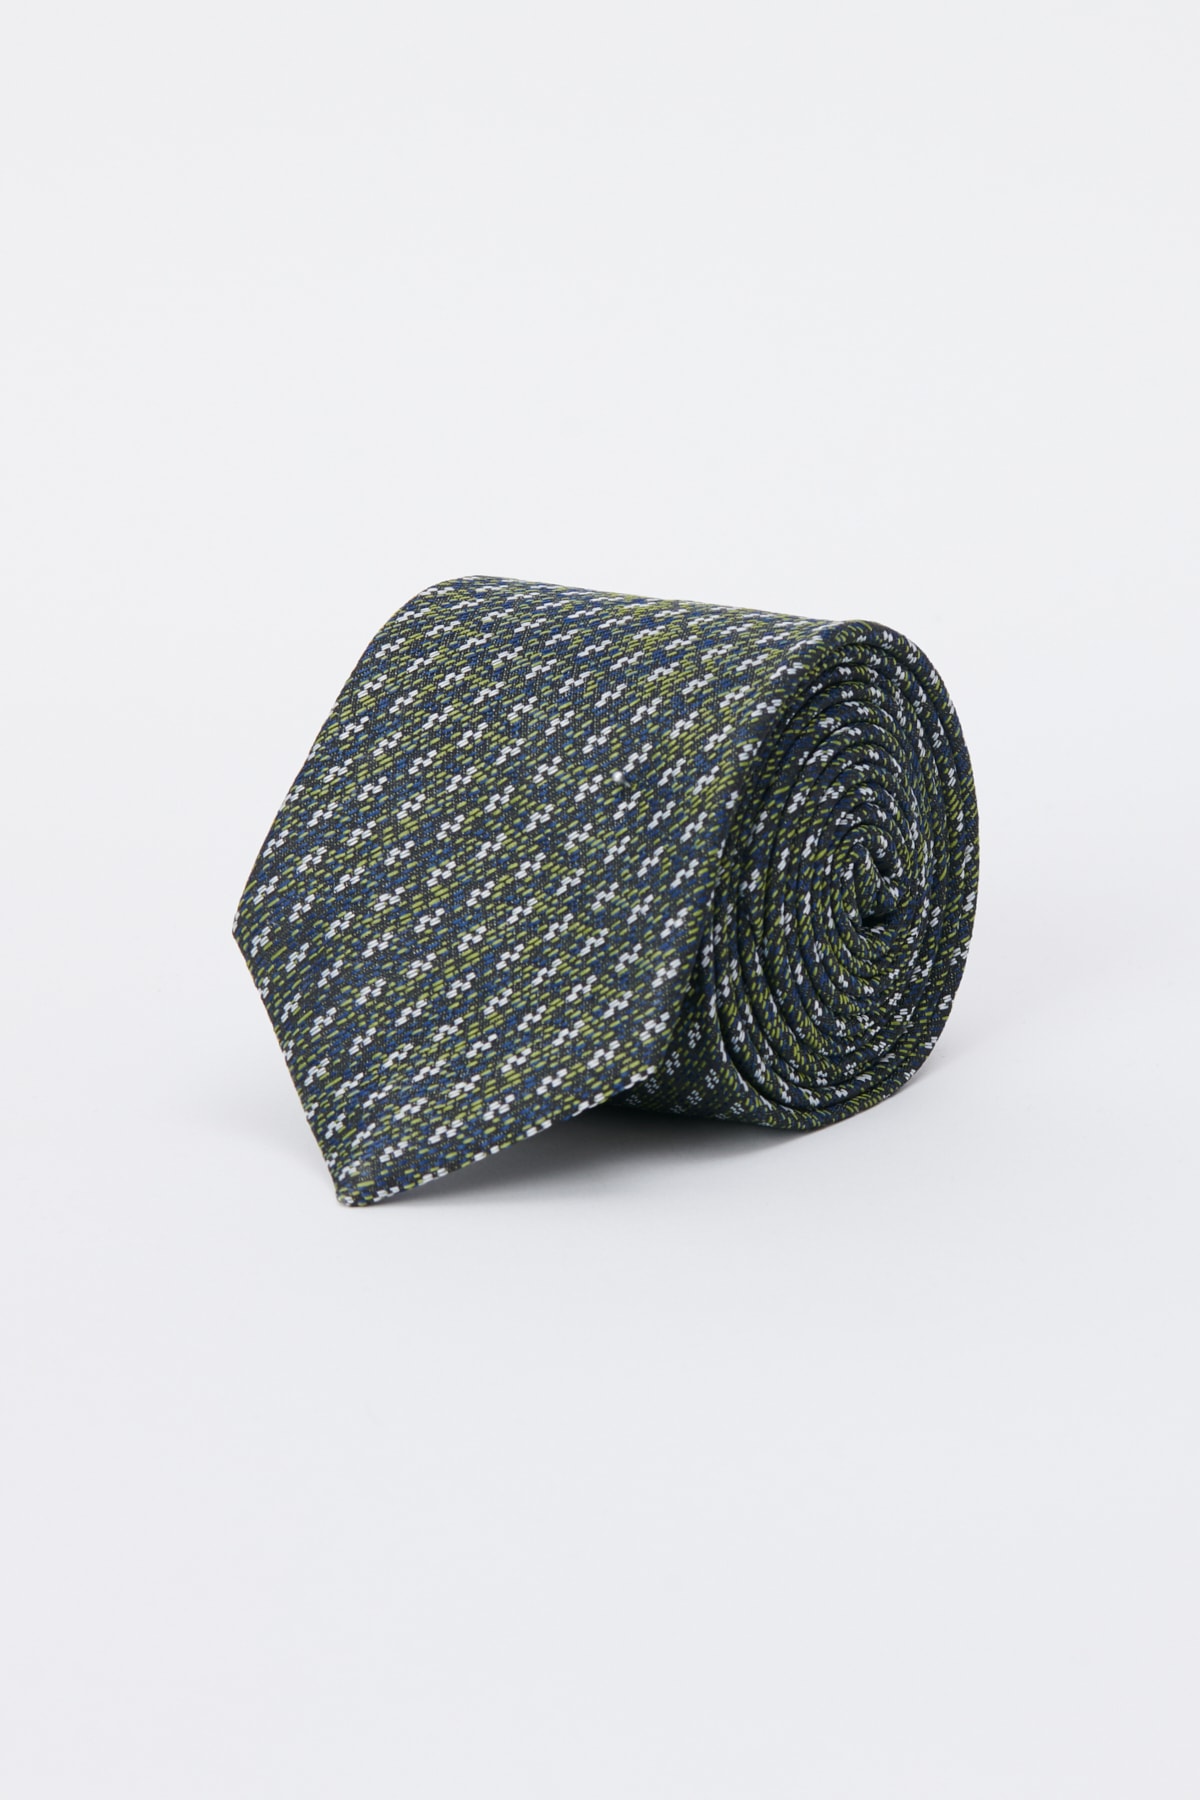 ALTINYILDIZ CLASSICS Men's Green Patterned Tie